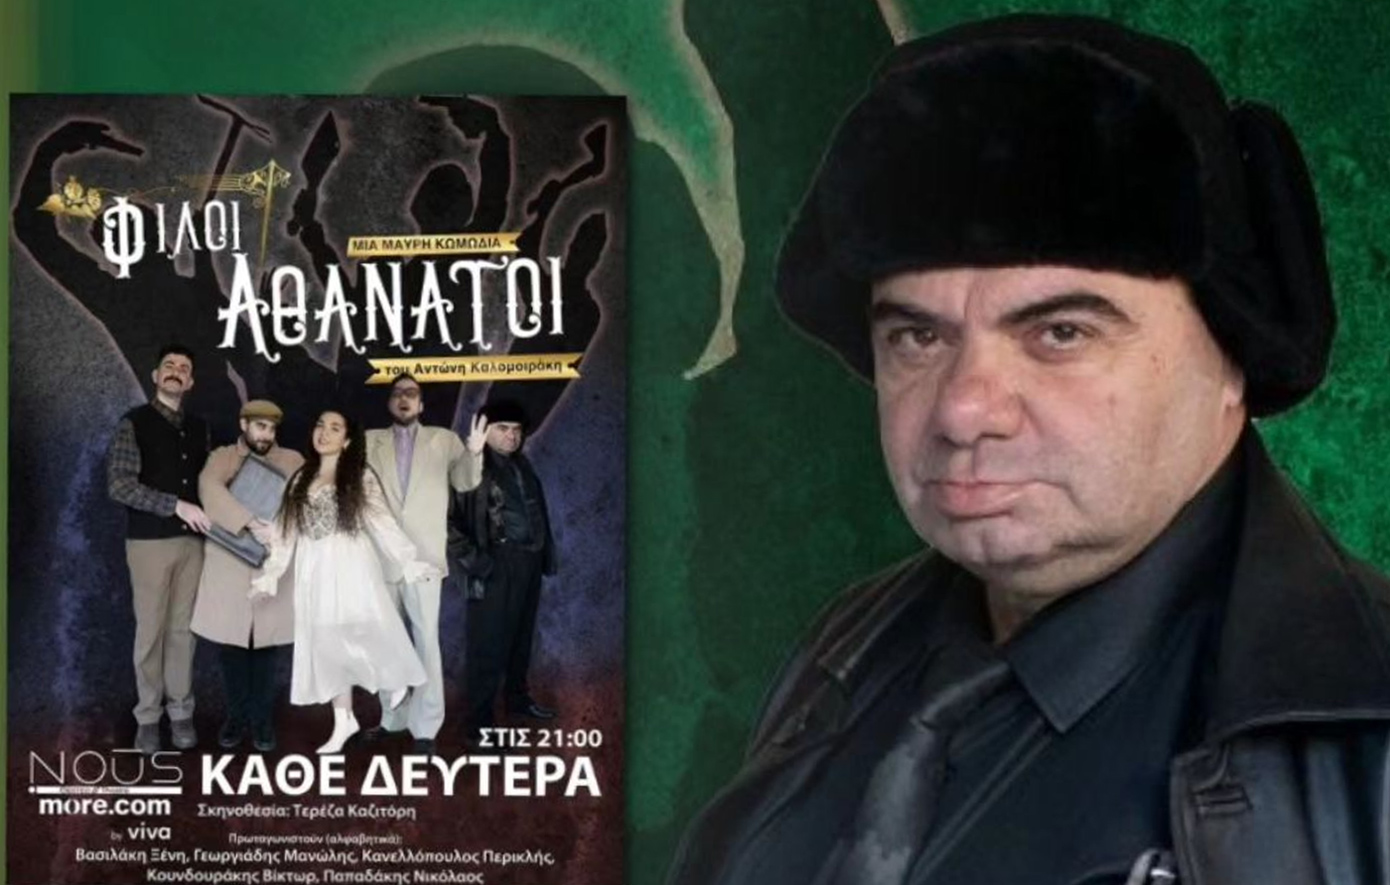 Πέθανε πάνω στη σκηνή του θεάτρου ο ηθοποιός, Μανώλης Γεωργιάδης